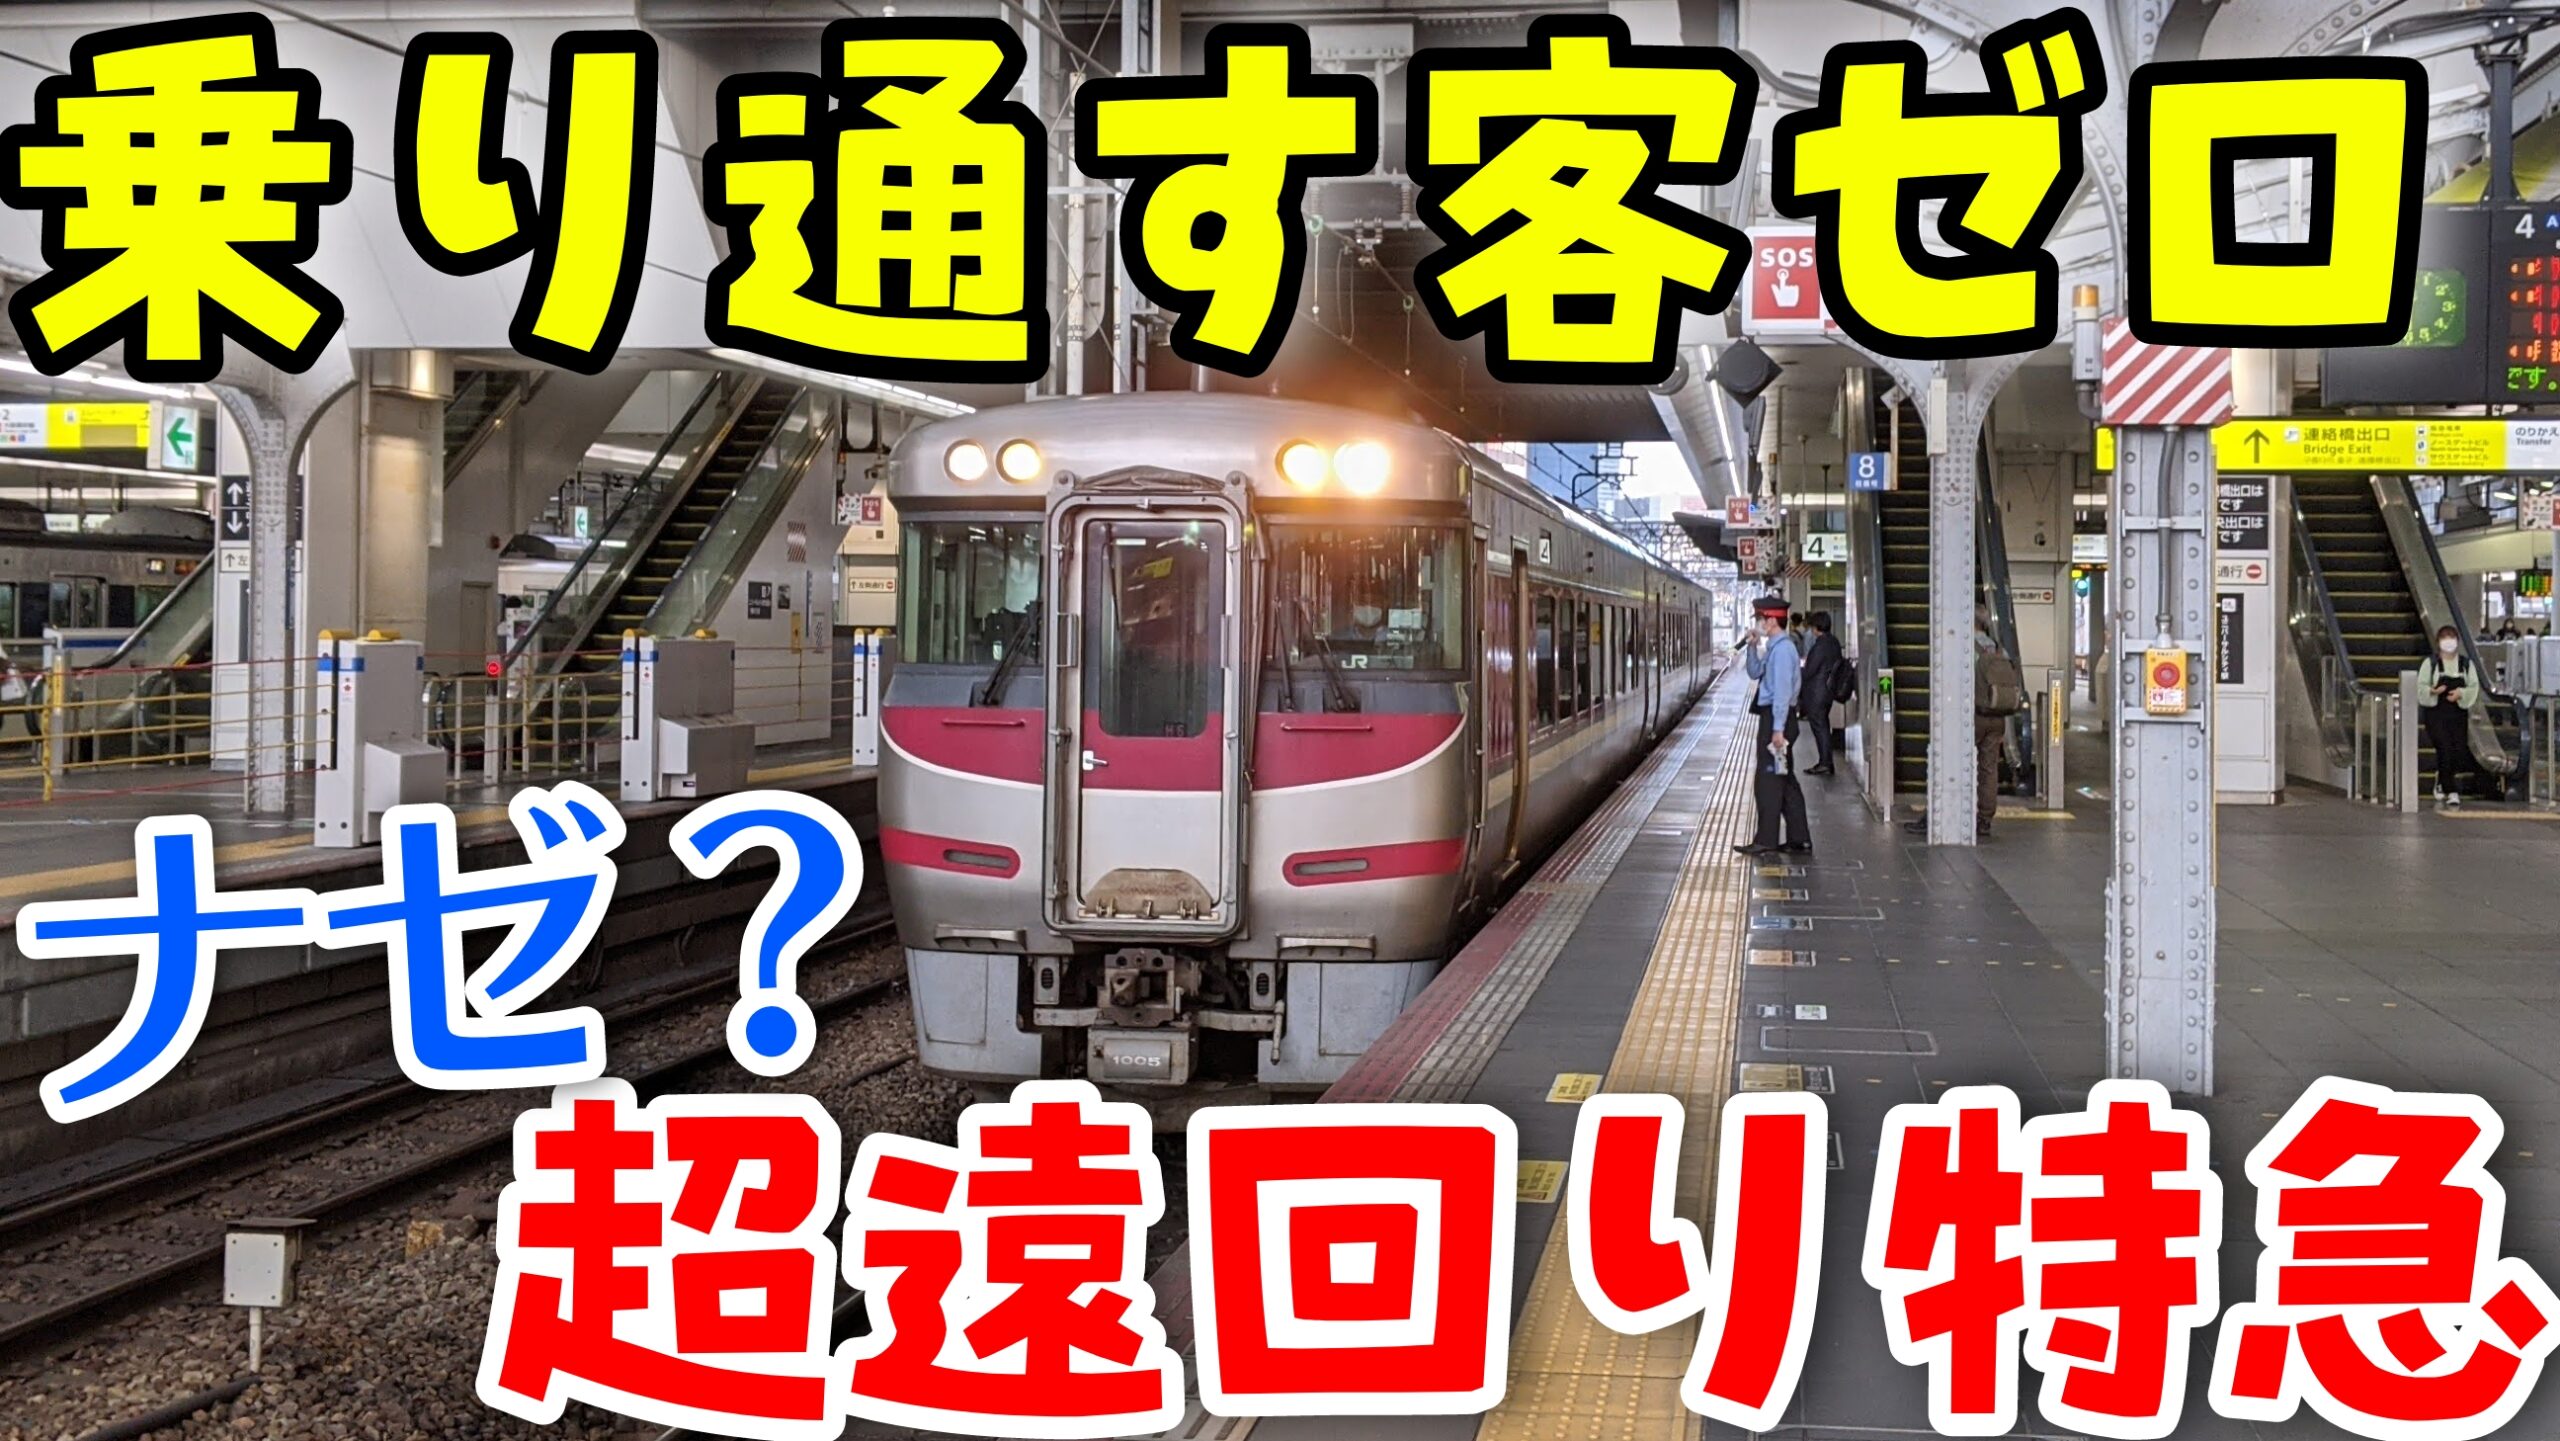 1本だけ終点を延ばす特急列車 特急はまかぜが鳥取まで行く理由[鳥取 